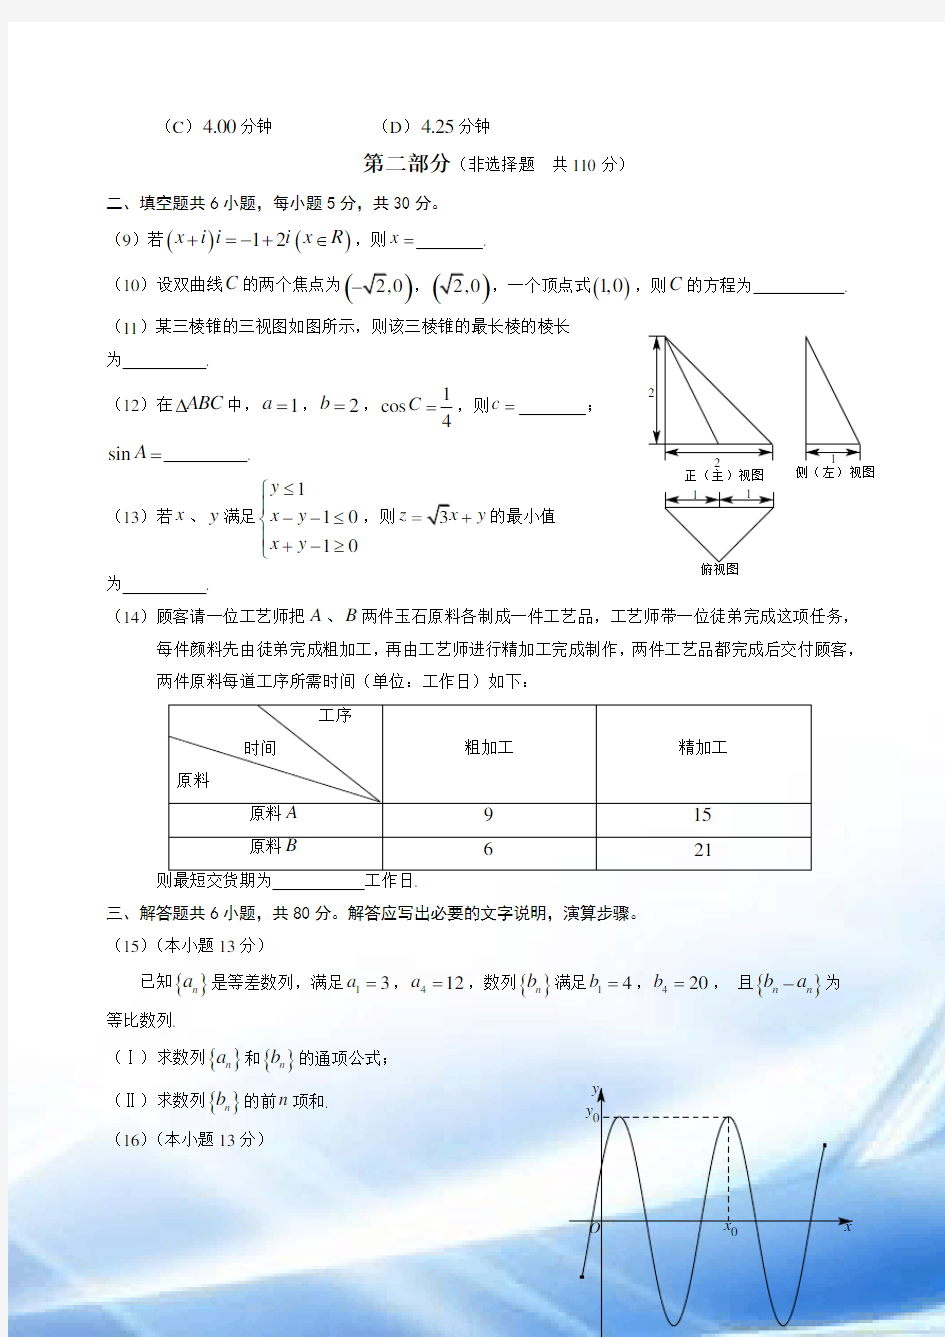 2014年北京高考(文科)数学试题及答案(完美版)